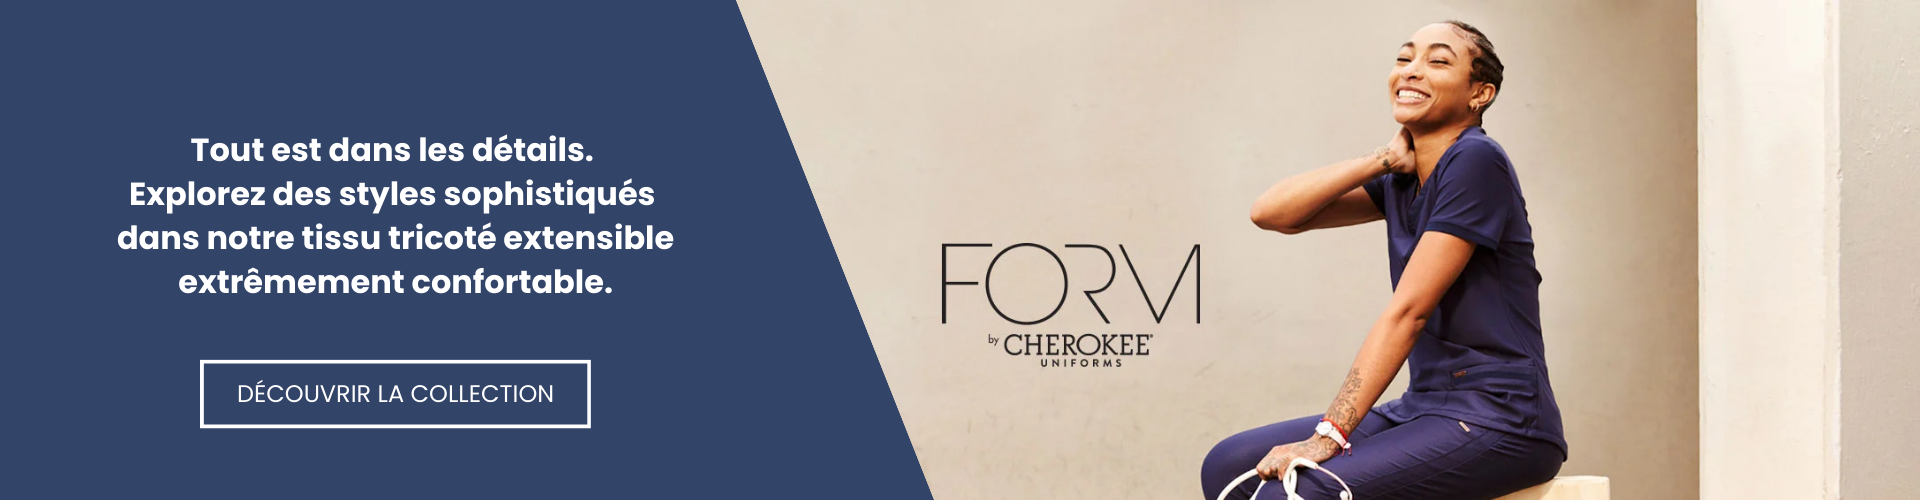 Form par Cherokee